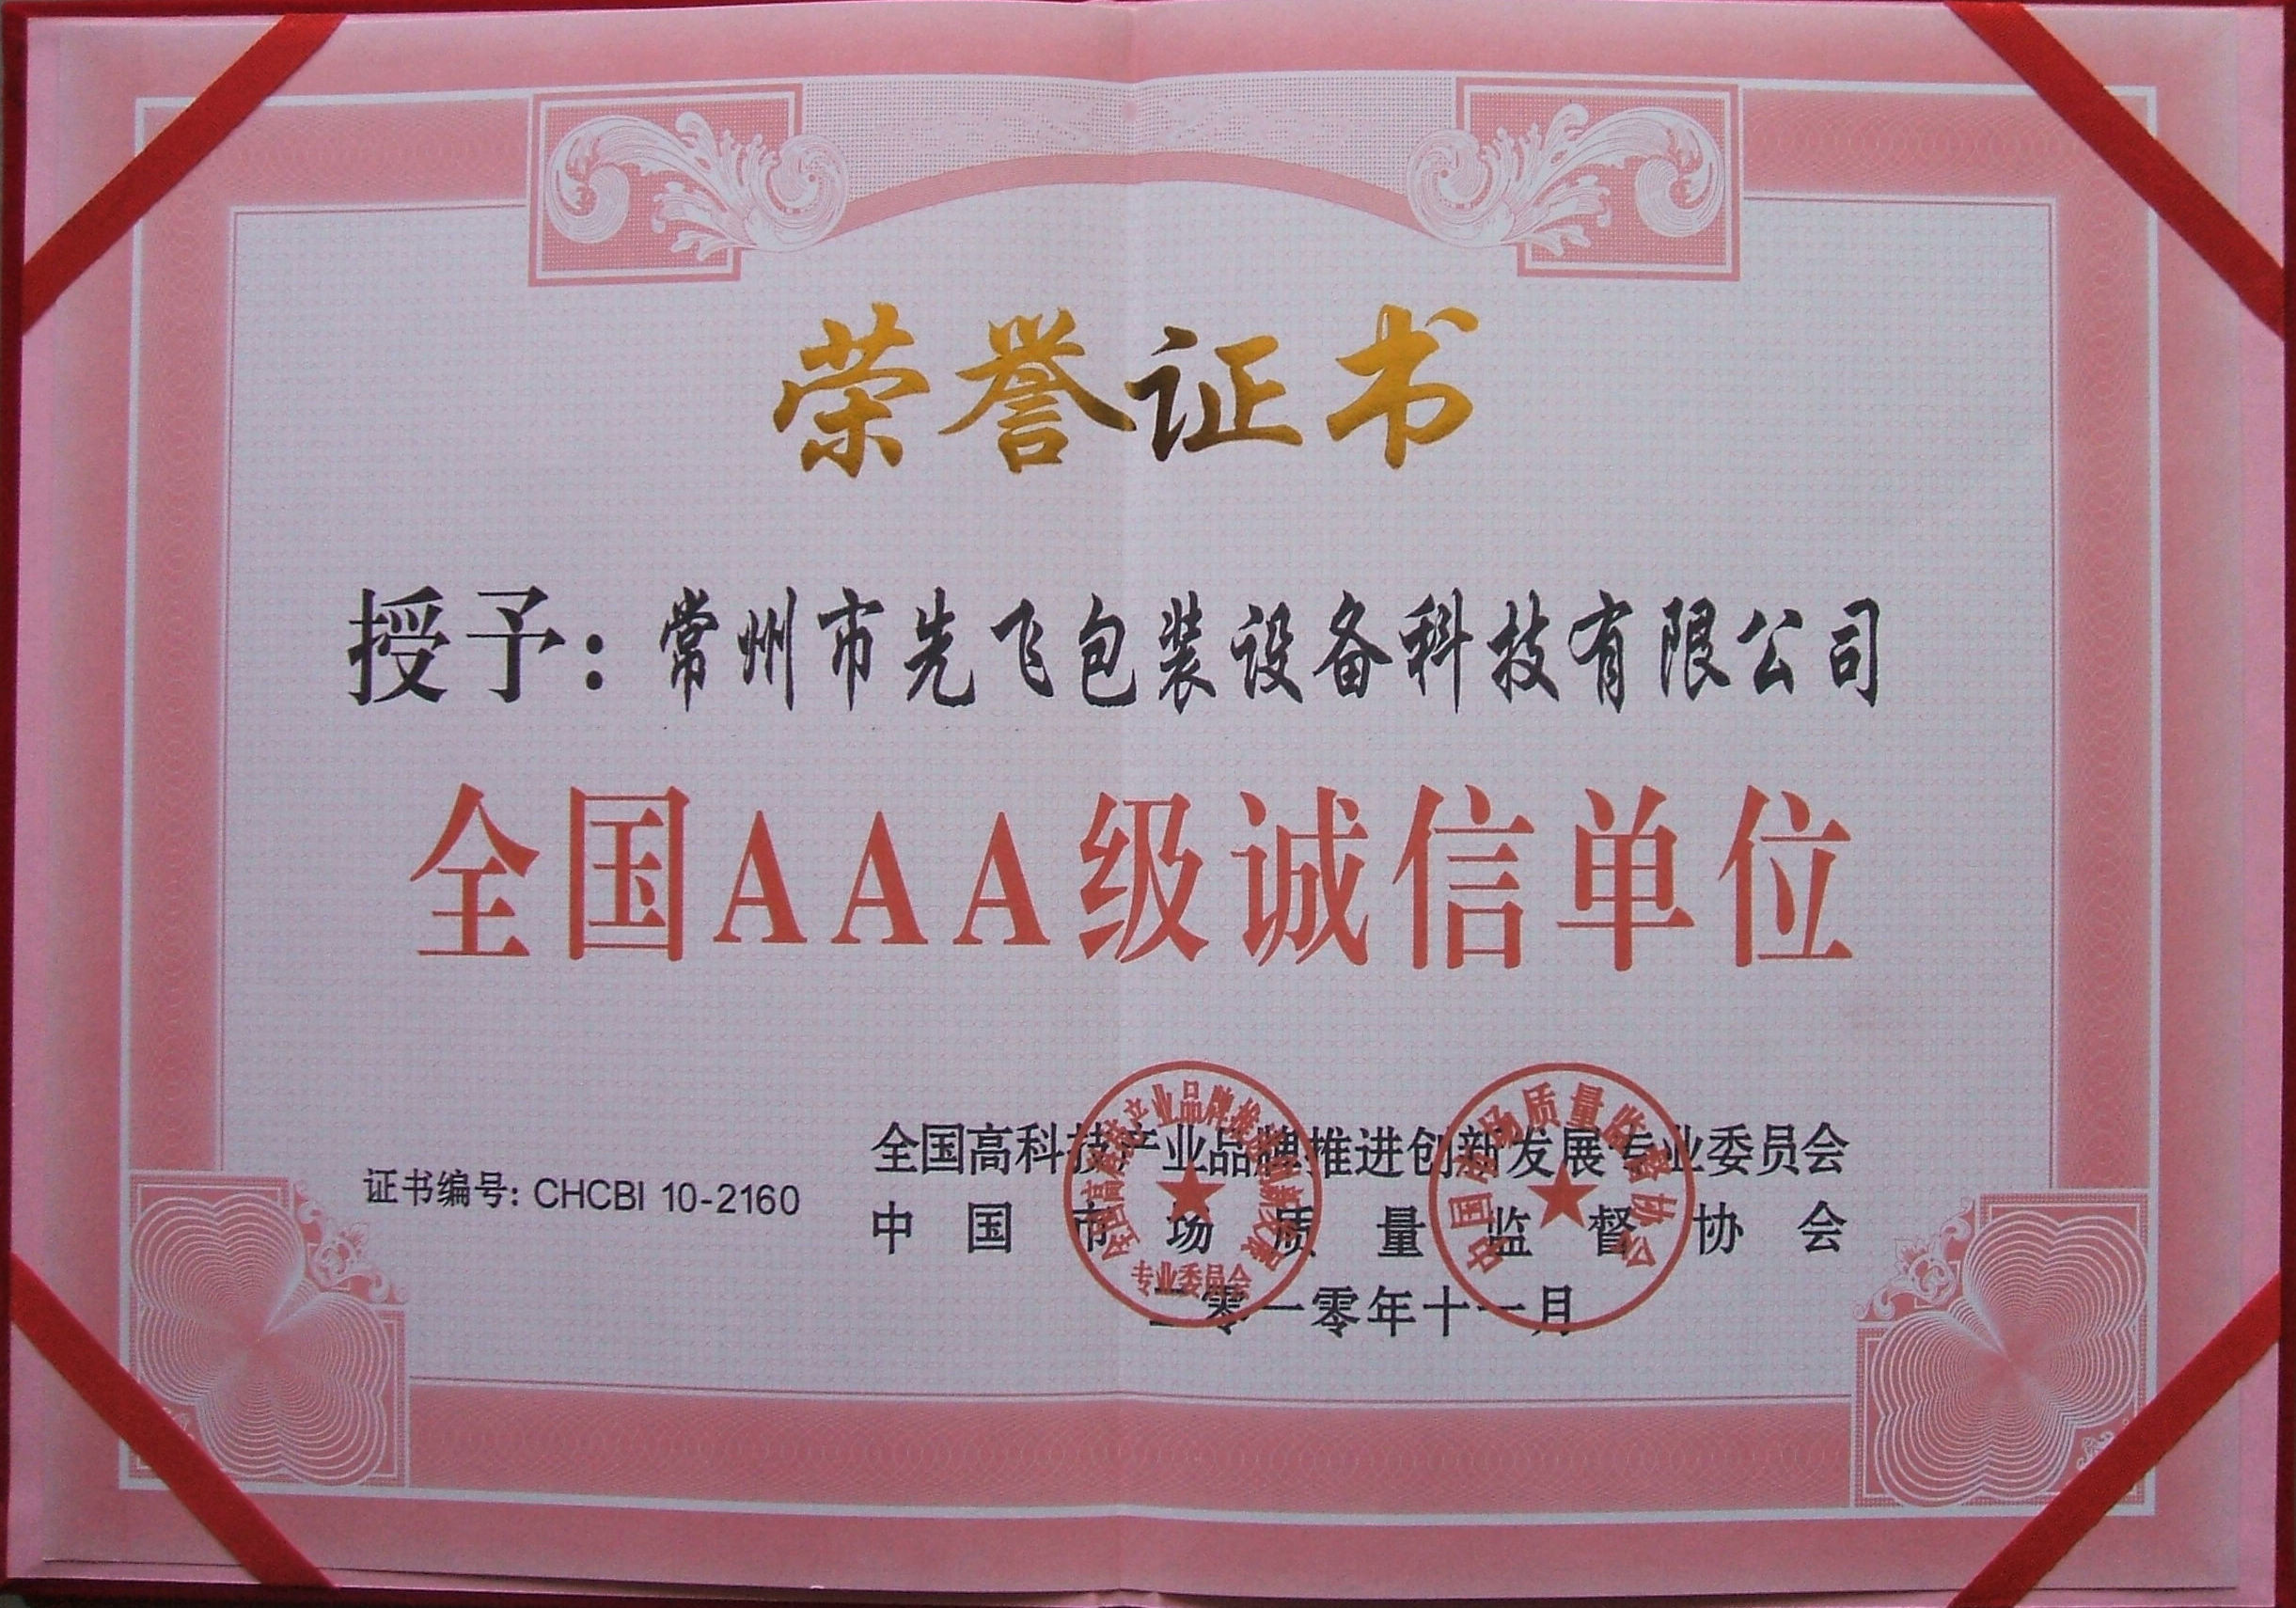 China Changzhou Xianfei Packing Equipment Technology Co., Ltd. Certification